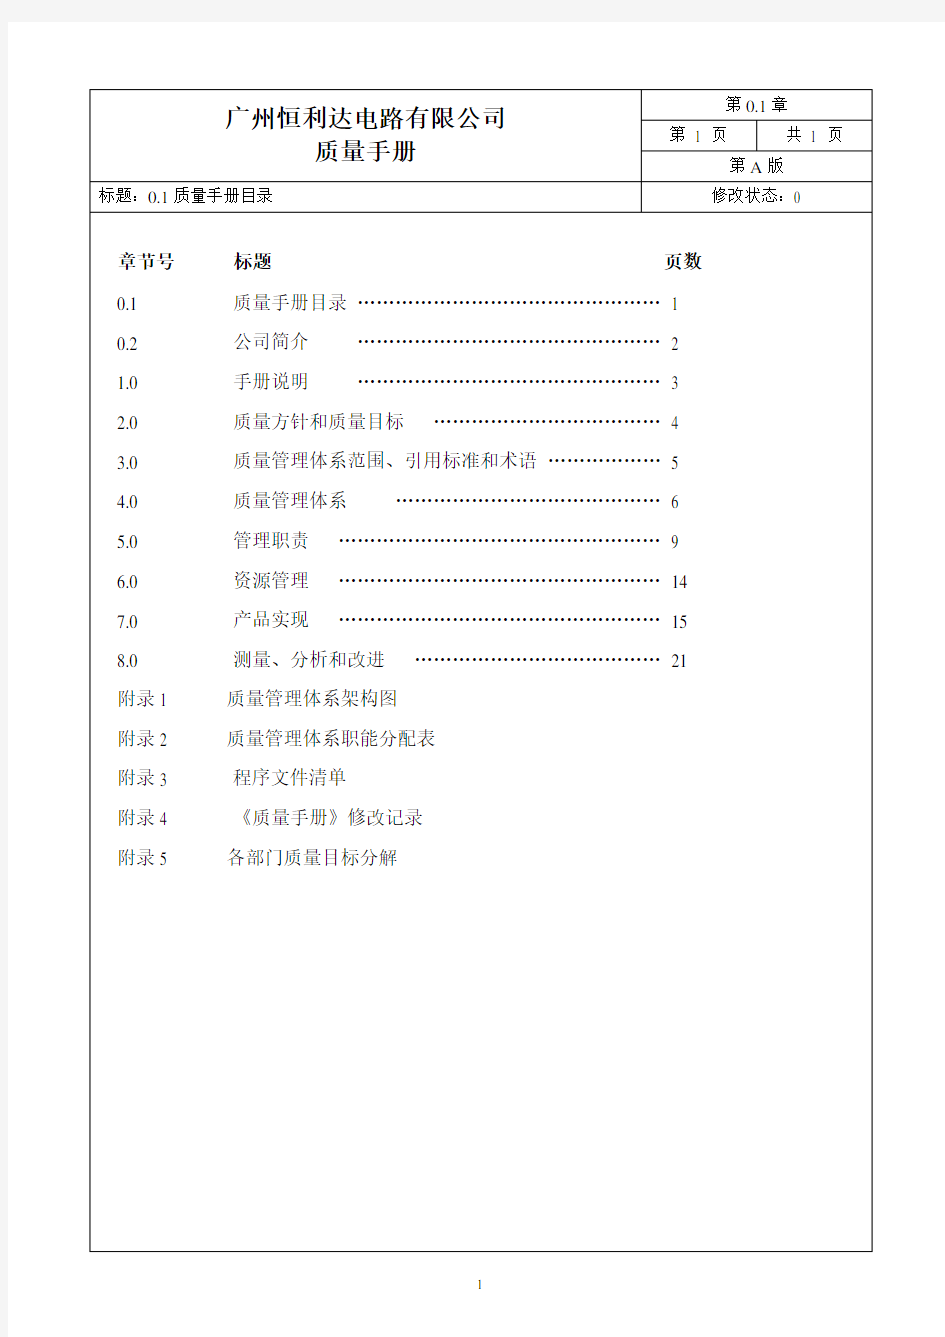 手册大全--广州恒利达电路有限公司质量手册